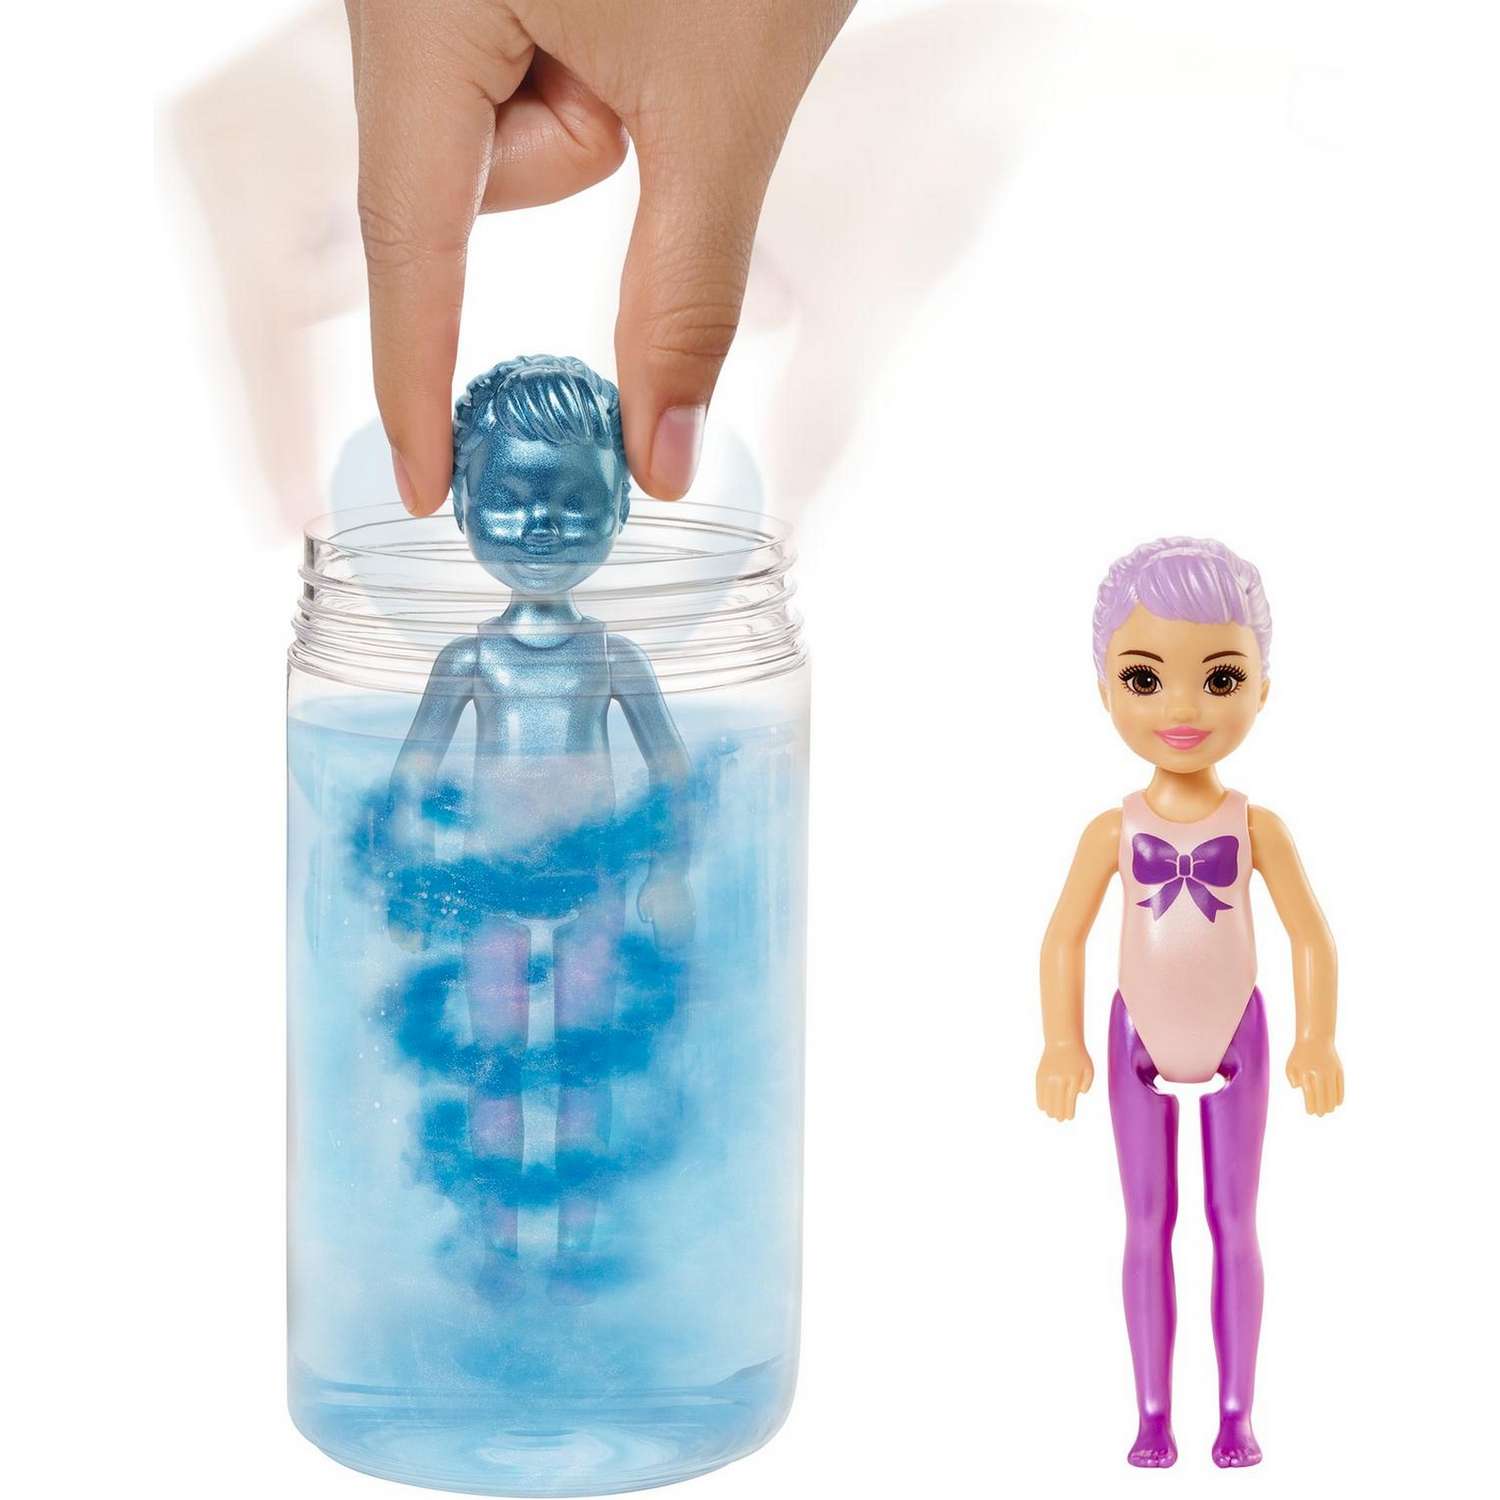 Набор Barbie Челси В1 кукла +аксессуары в непрозрачной упаковке (Сюрприз) GWC59 GTT23 - фото 6